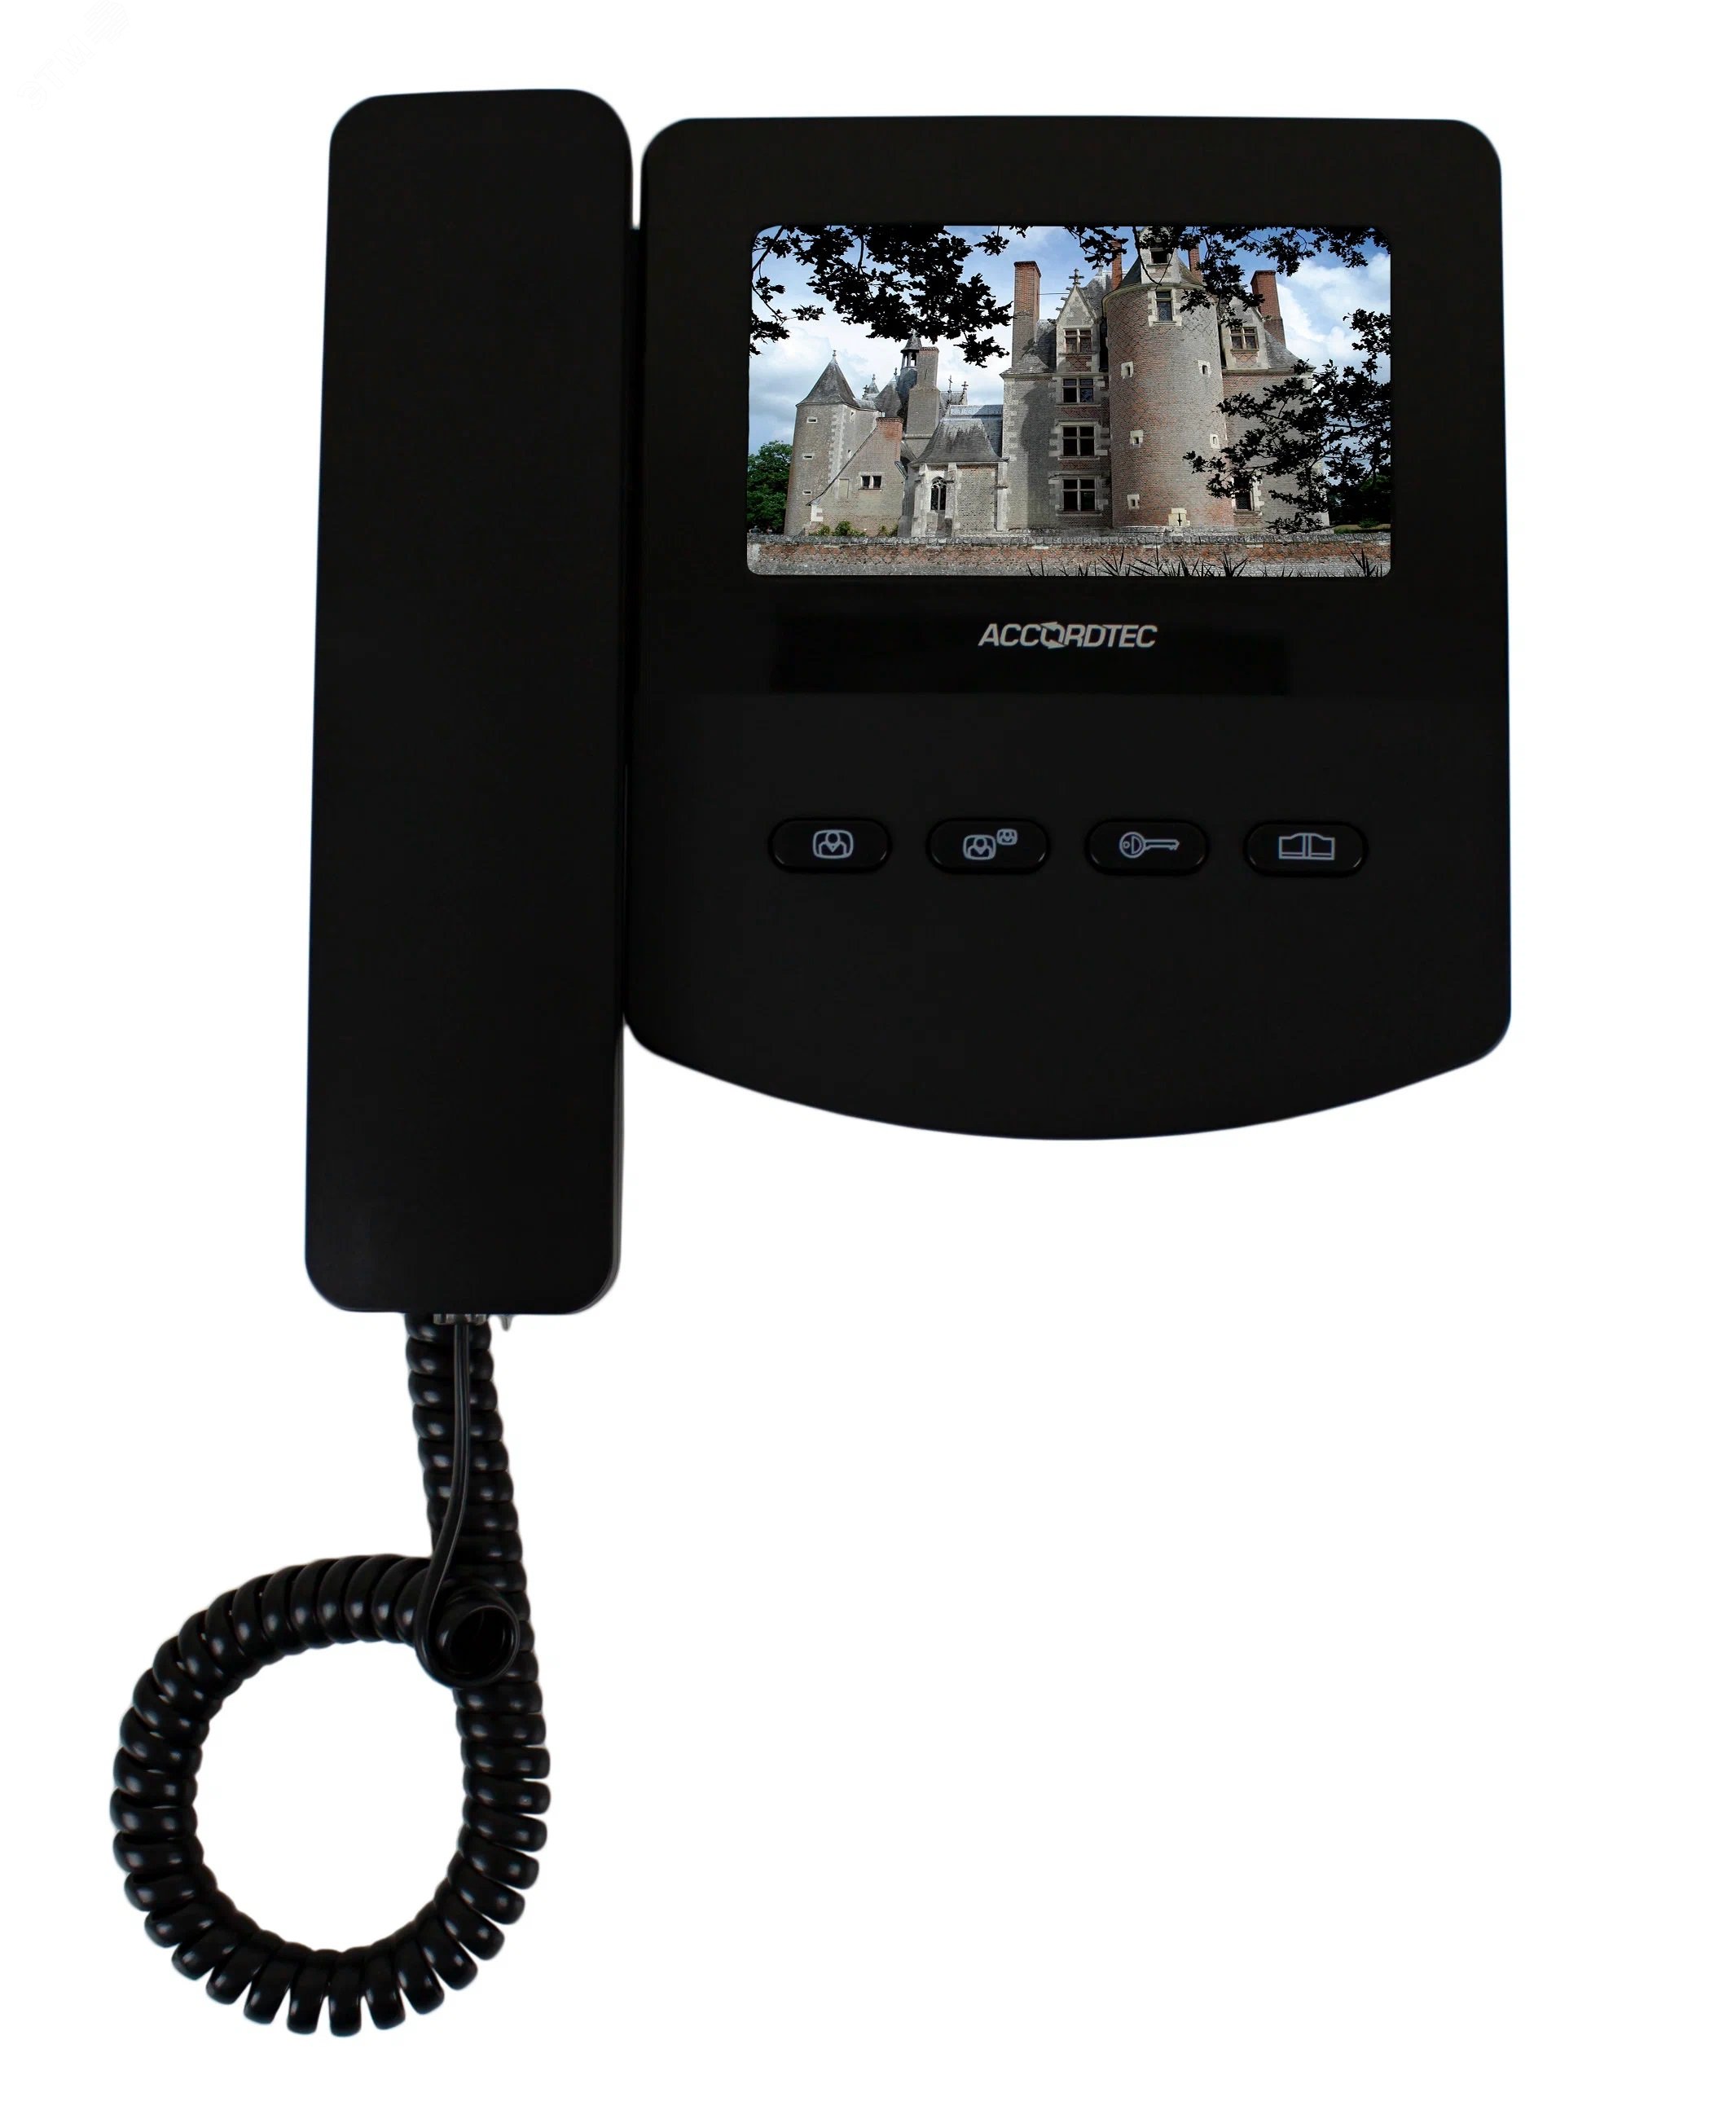 Видеодомофон цветной 4-x проводный, 4.3 TFT LCD AT-VD433C BL AccordTec